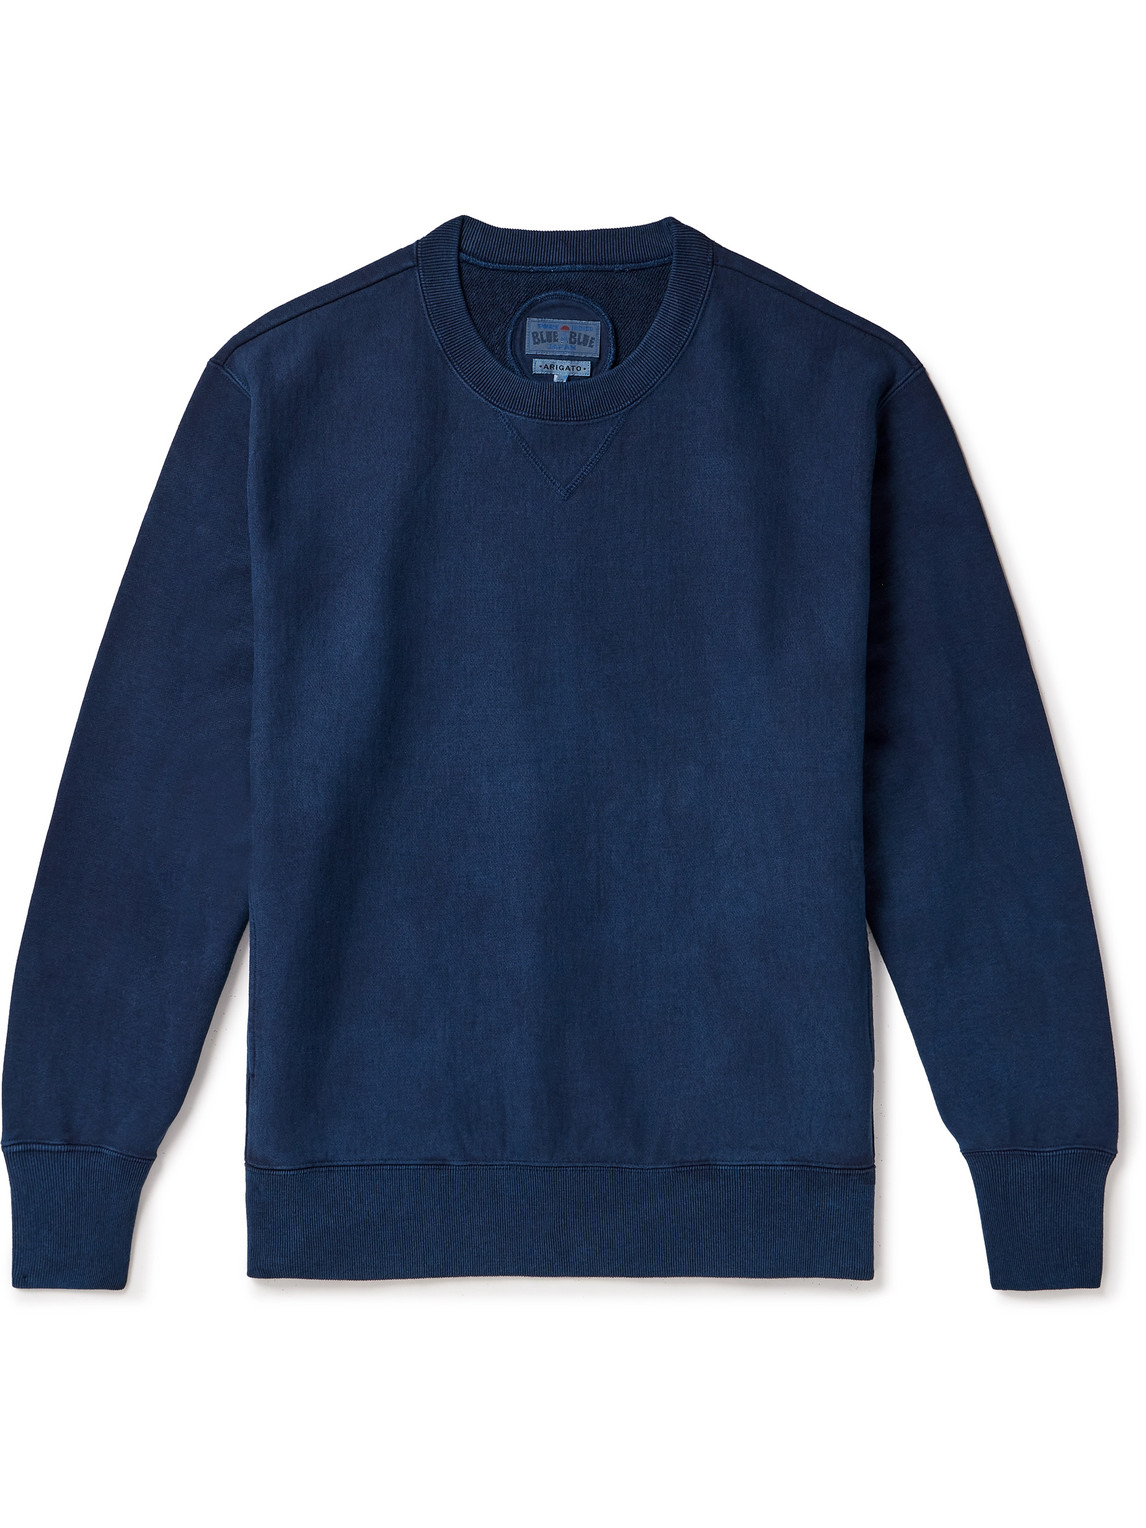 Blue Blue Japan - Indigo-Dyed Cotton-Jersey Sweatshirt - Men - Blue - S von Blue Blue Japan